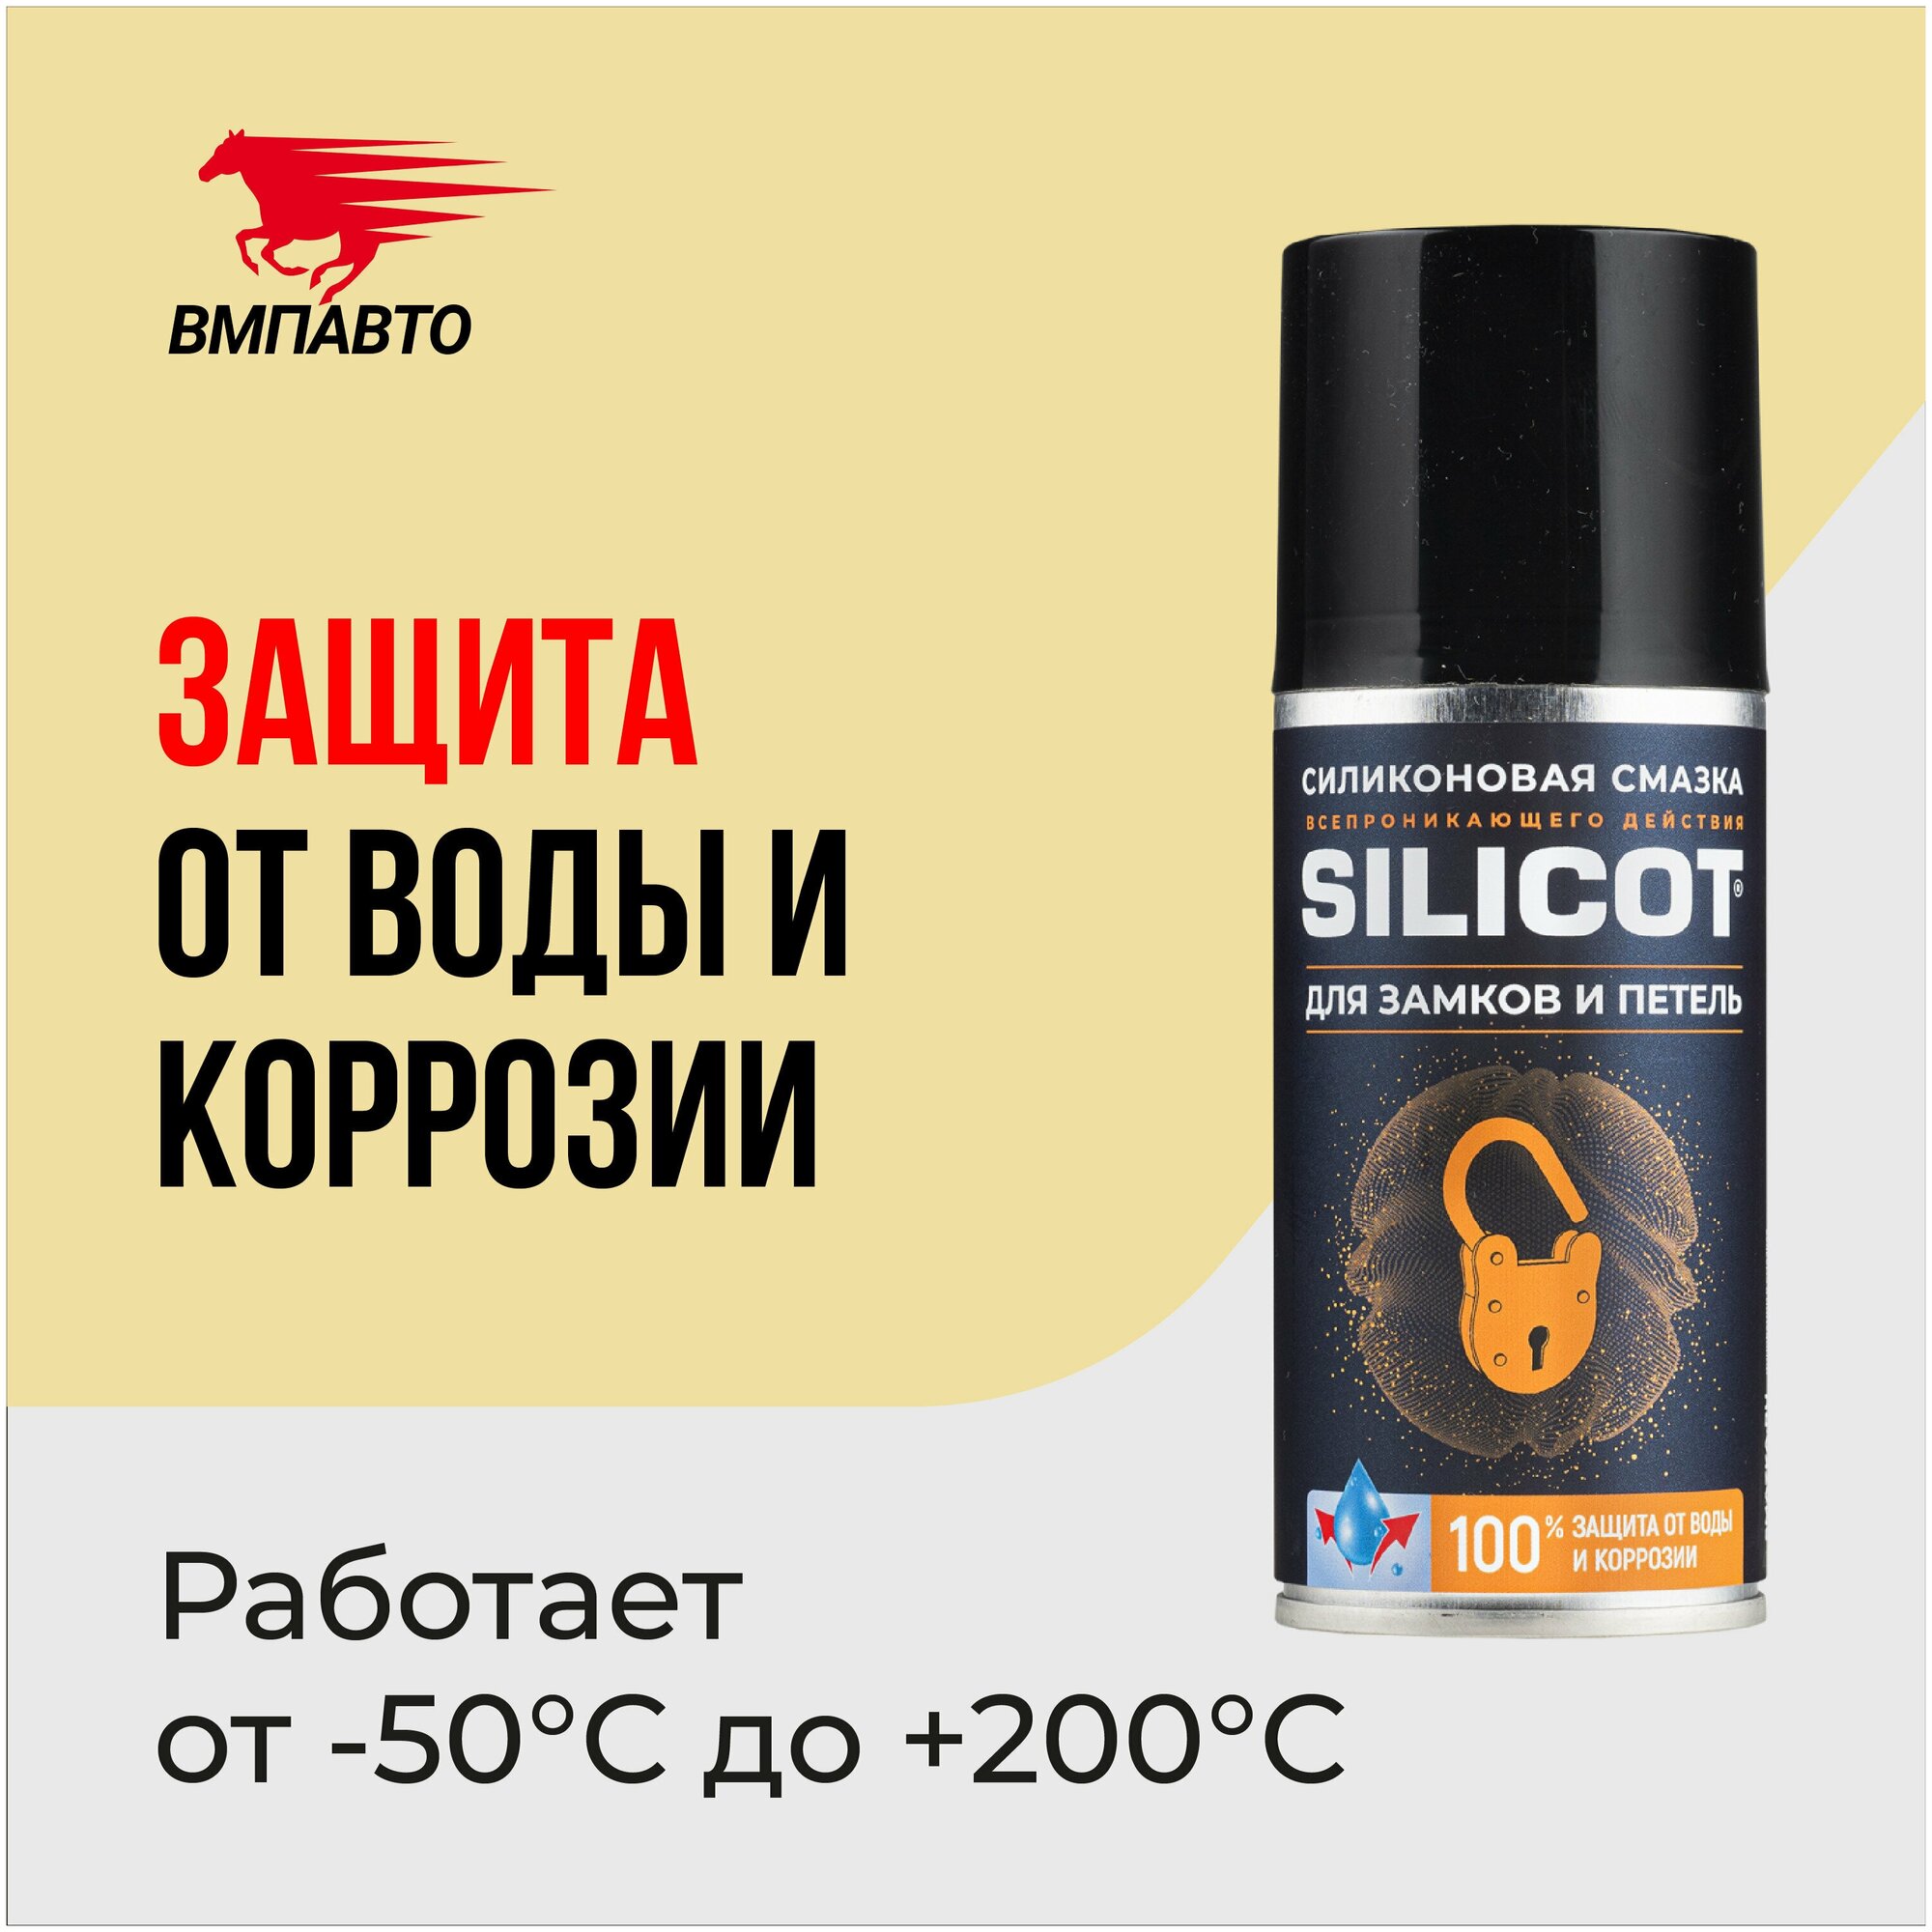 Смазка Silicot Spray Для Замков И Петель, 210мл Флакон Аэрозоль ВМПАВТО арт. 2708